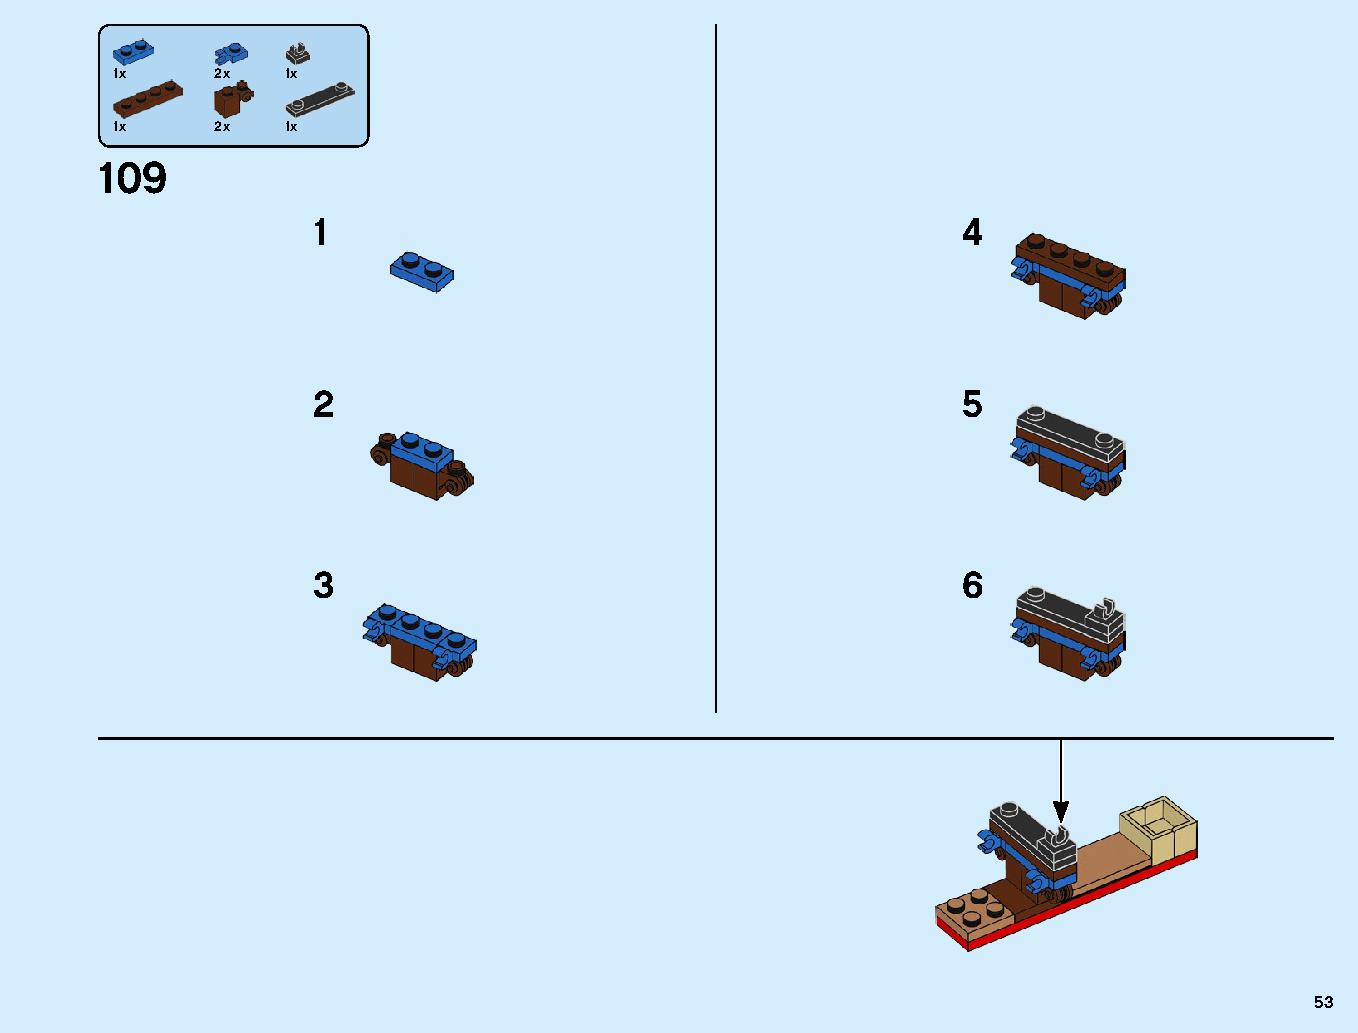 ニンジャ道場 70670 レゴの商品情報 レゴの説明書・組立方法 53 page